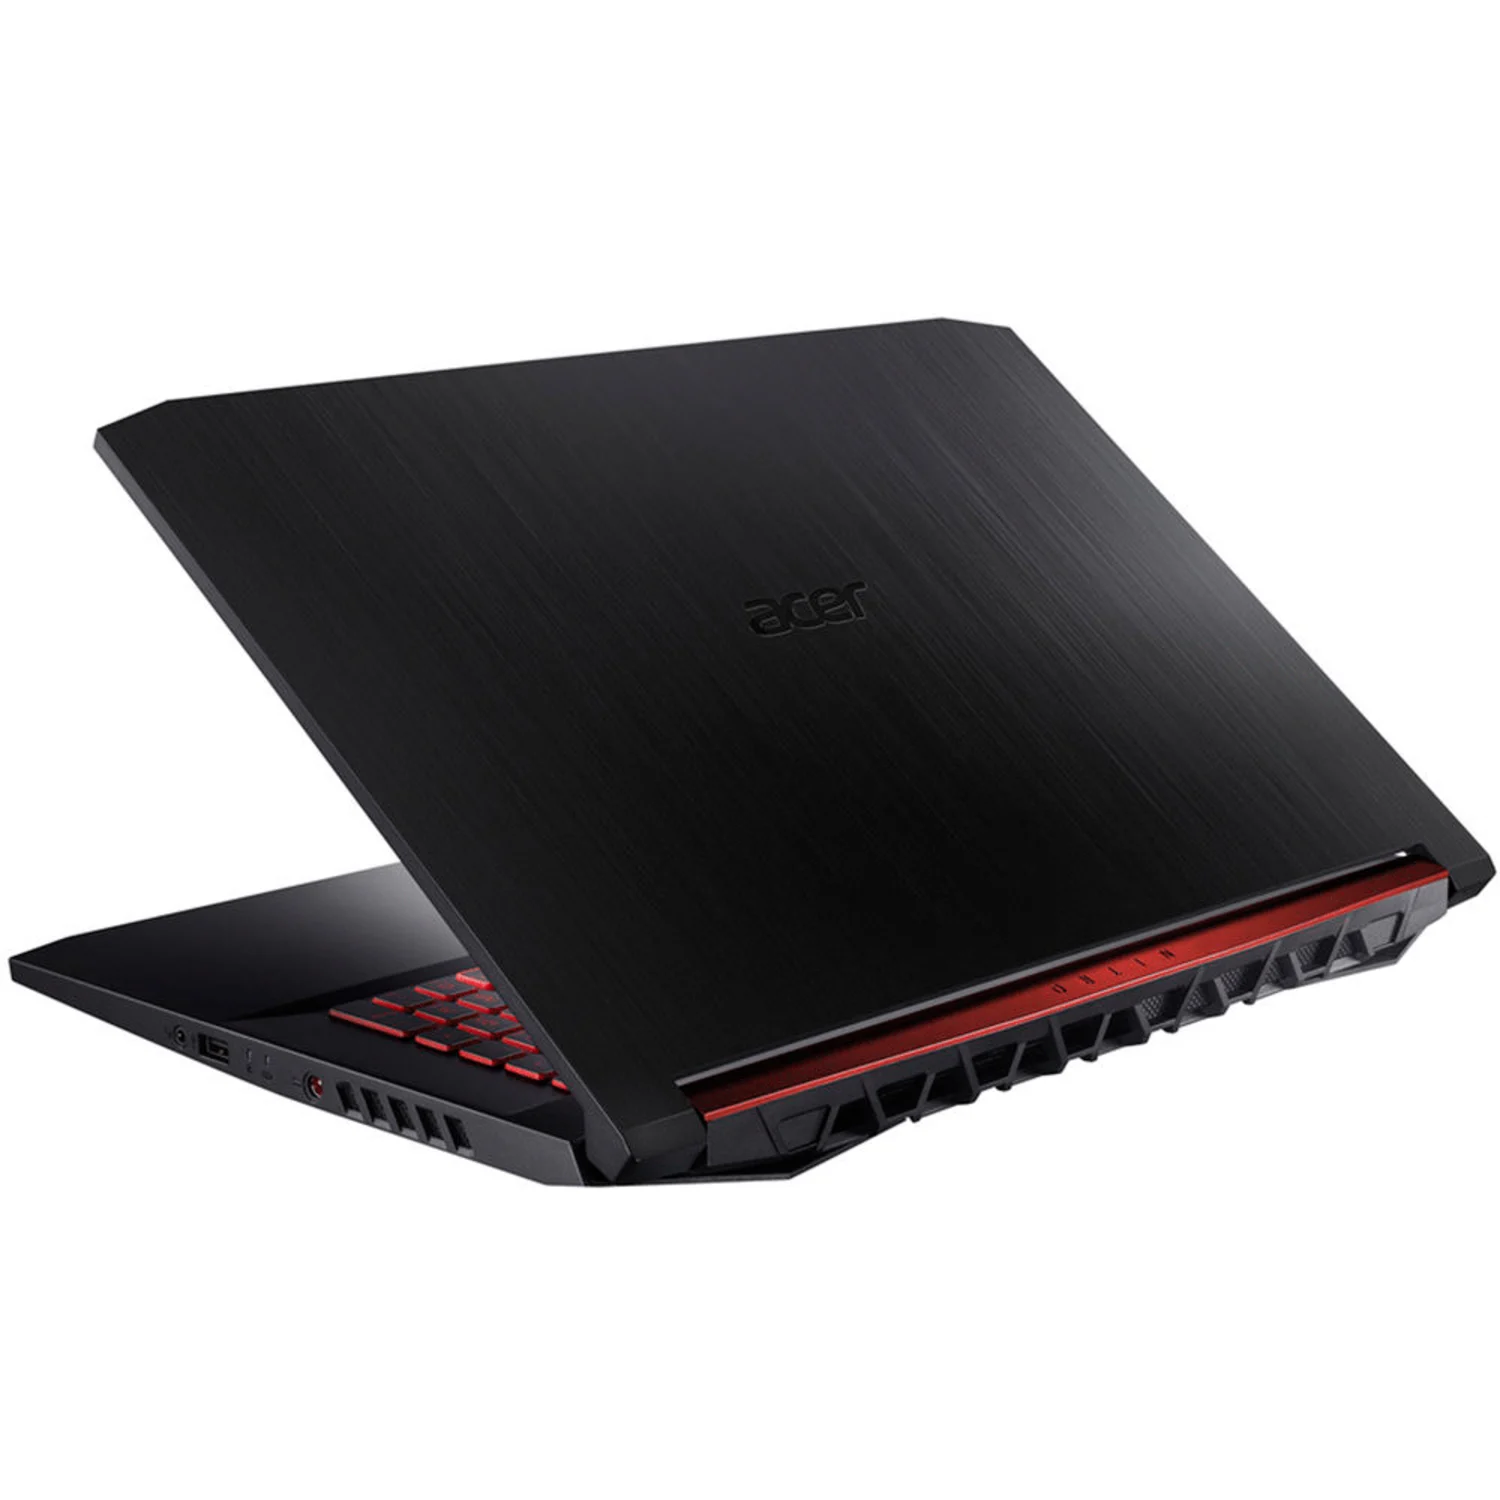 Notebook Acer Nitro 5 Intel Core i5 9300H / Tela 15.6" / Memória RAM 8GB / SSD 512GB / Placa de vídeo GeForce GTX 1650 4GB / Windows 10 - Preto e vermelho (AN515-54-599H)